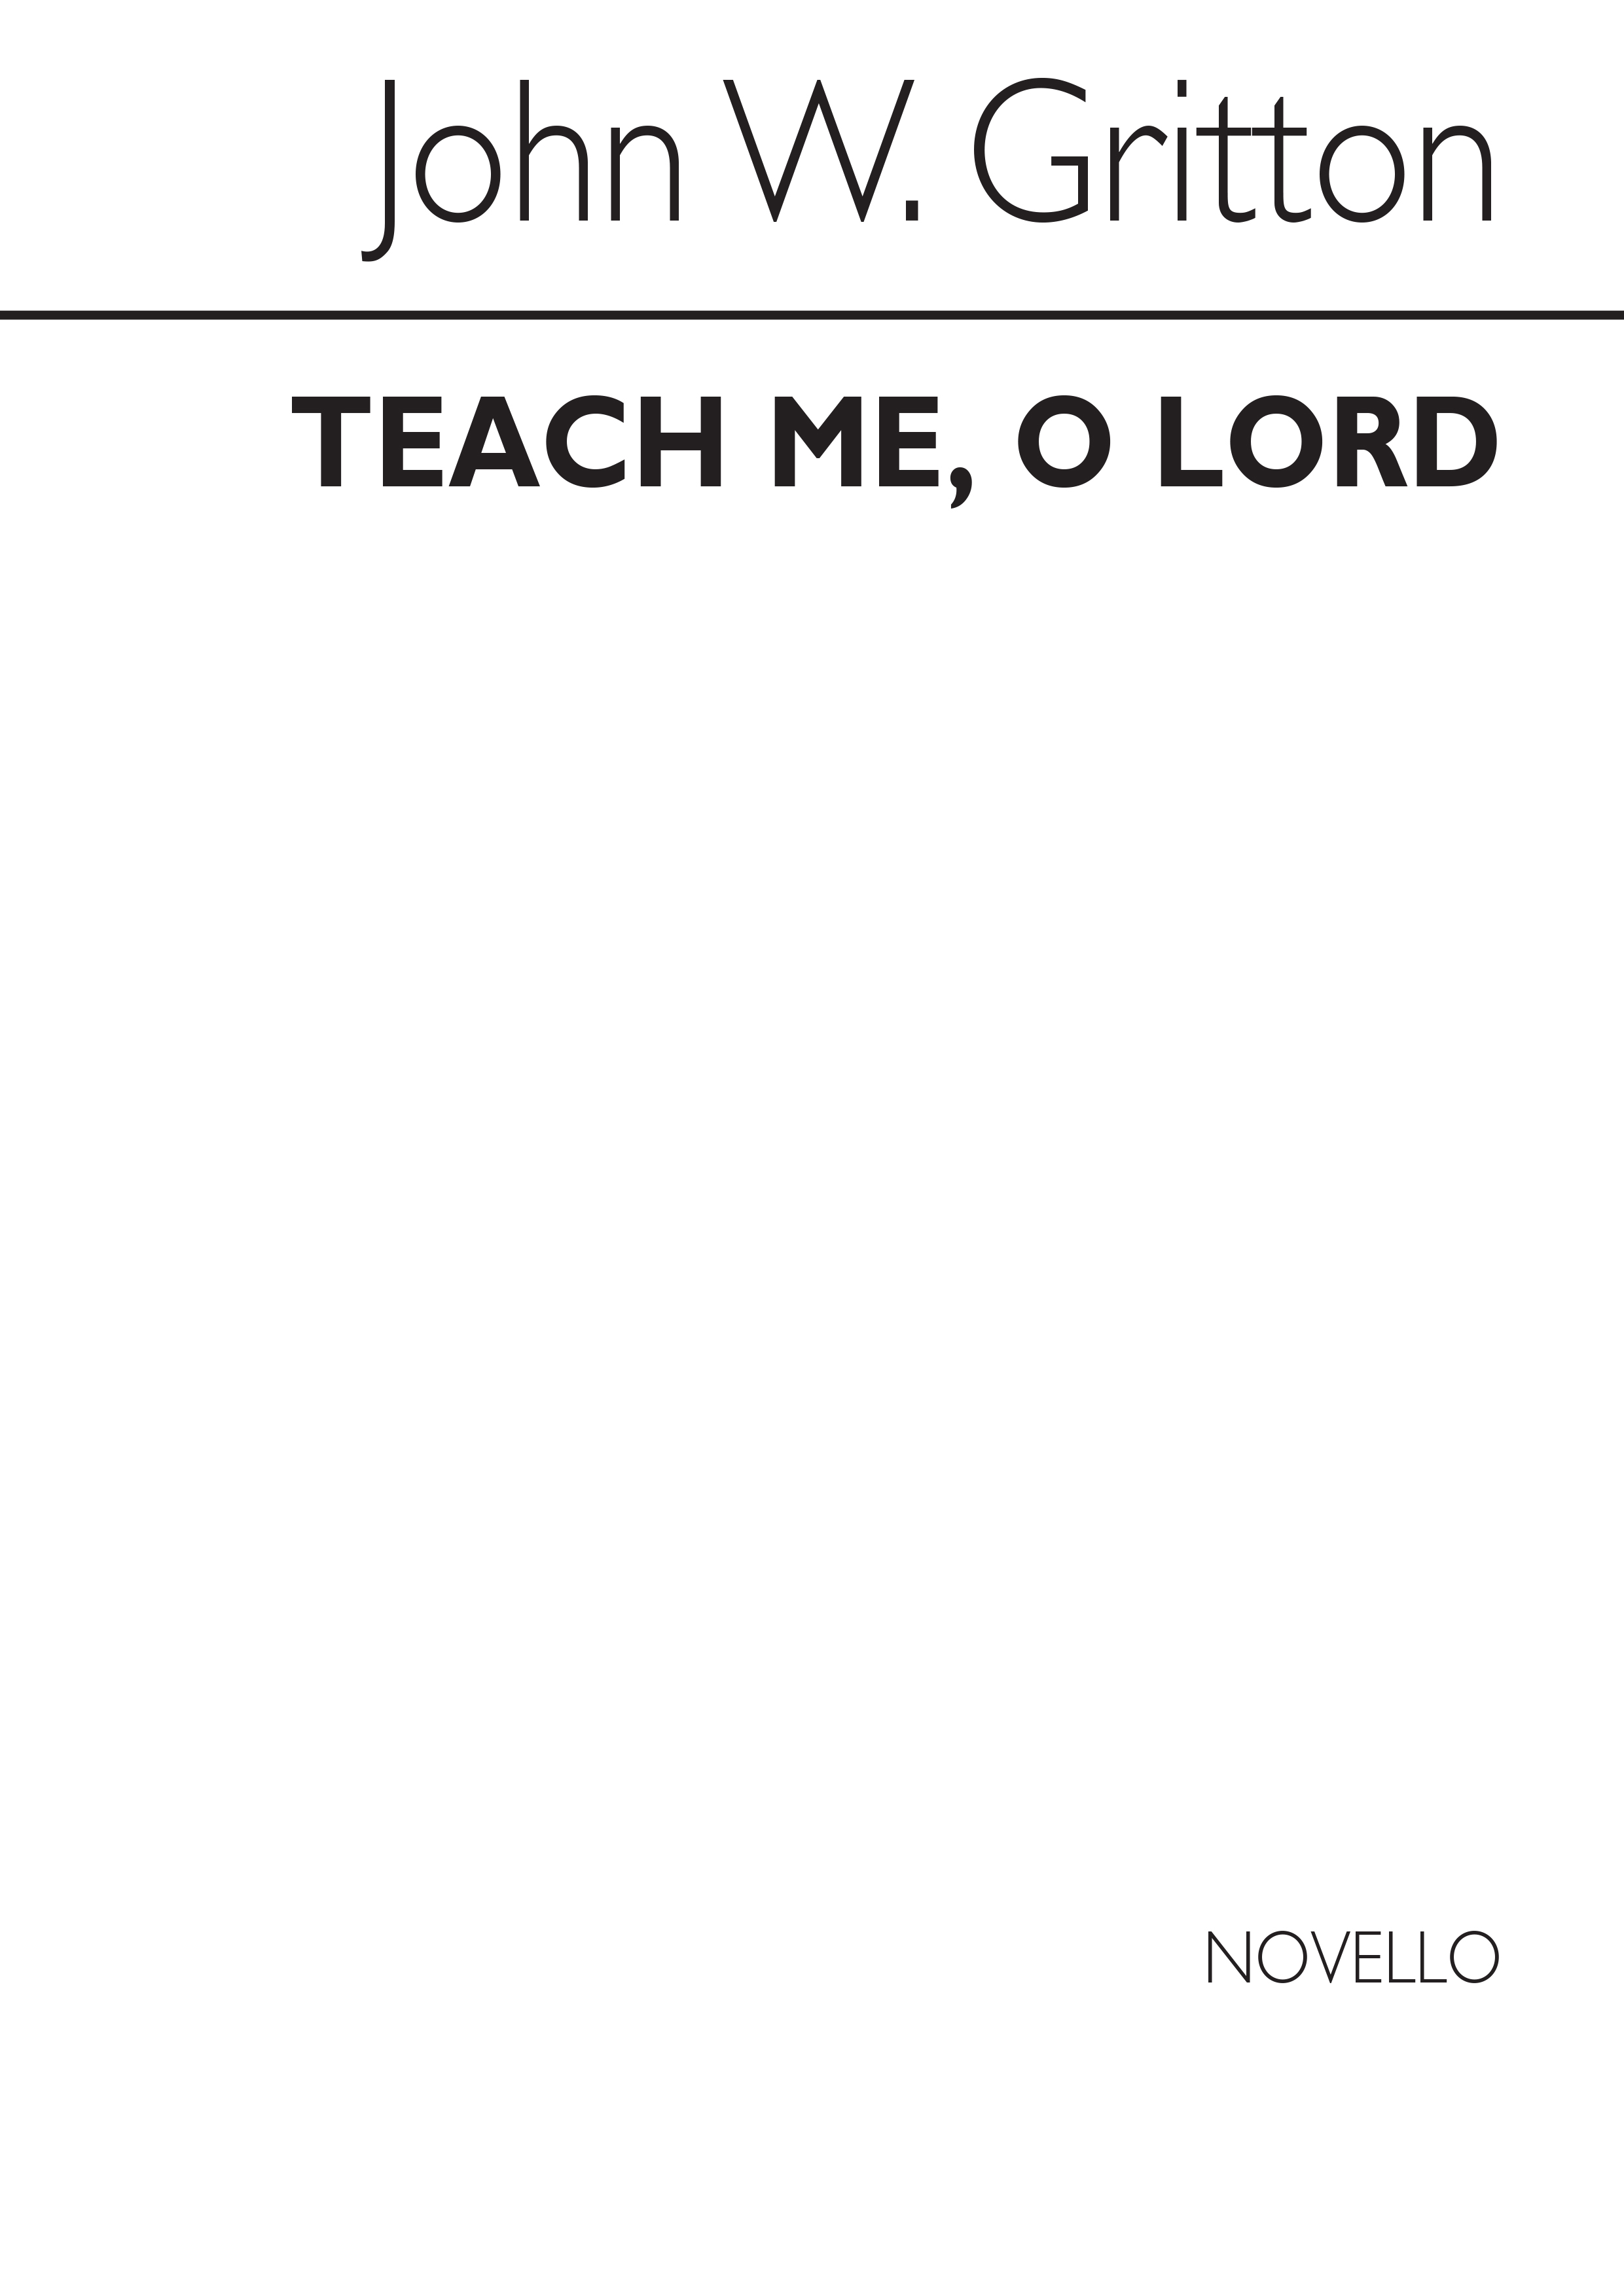 John Gritton: Teach Me, O Lord